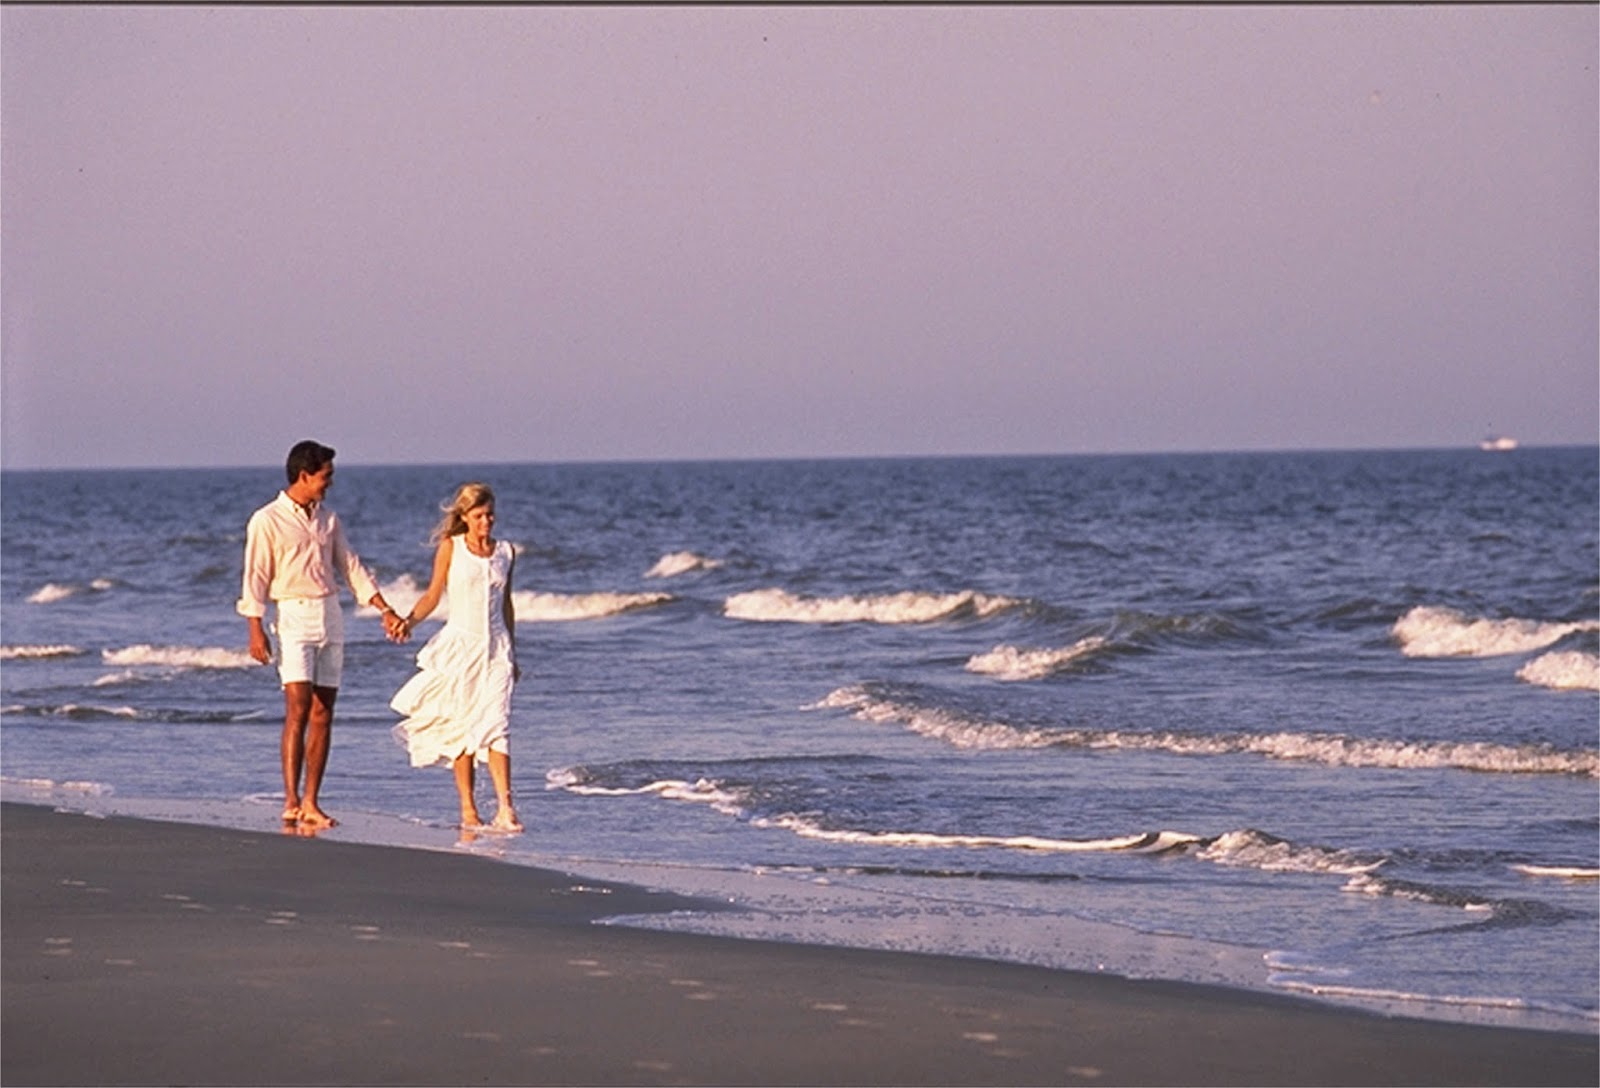 Курортный роман и секс на заброшенном пляже где-то вдалеке от отеля пара пришла поебаться на берегу